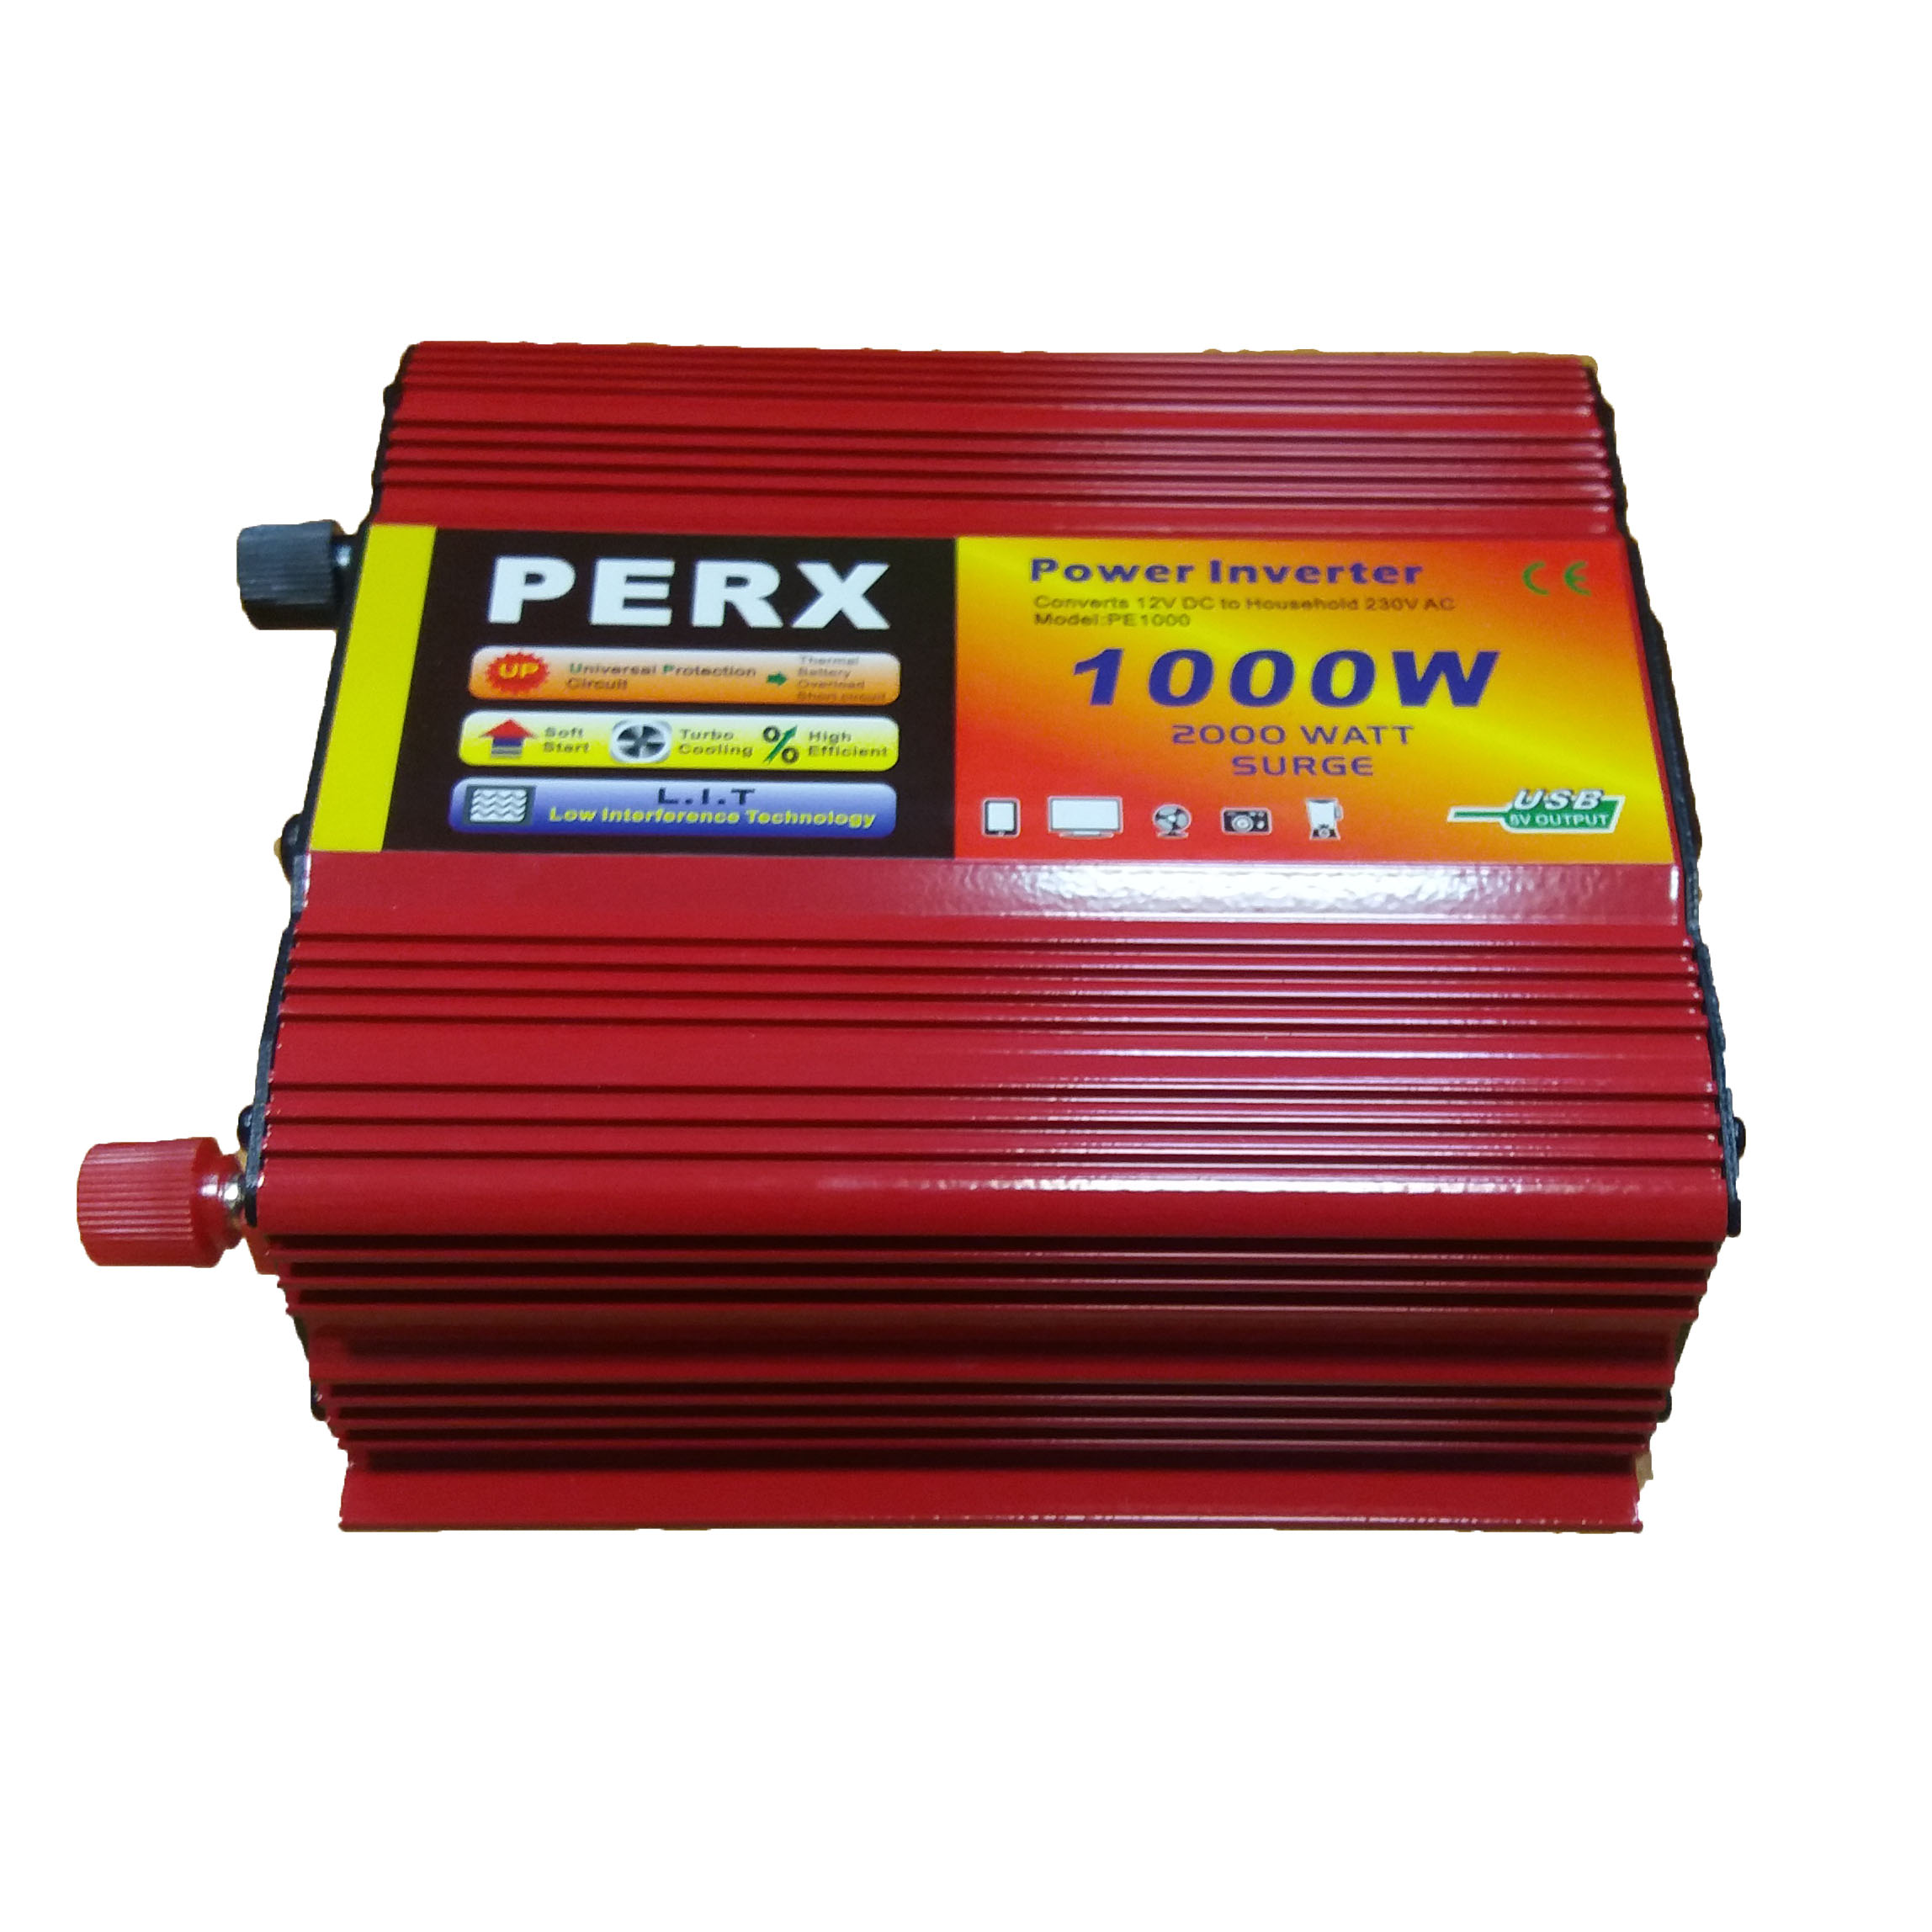 اینورتر پرکس مدل PE 1000-12 ظرفیت 1000 وات